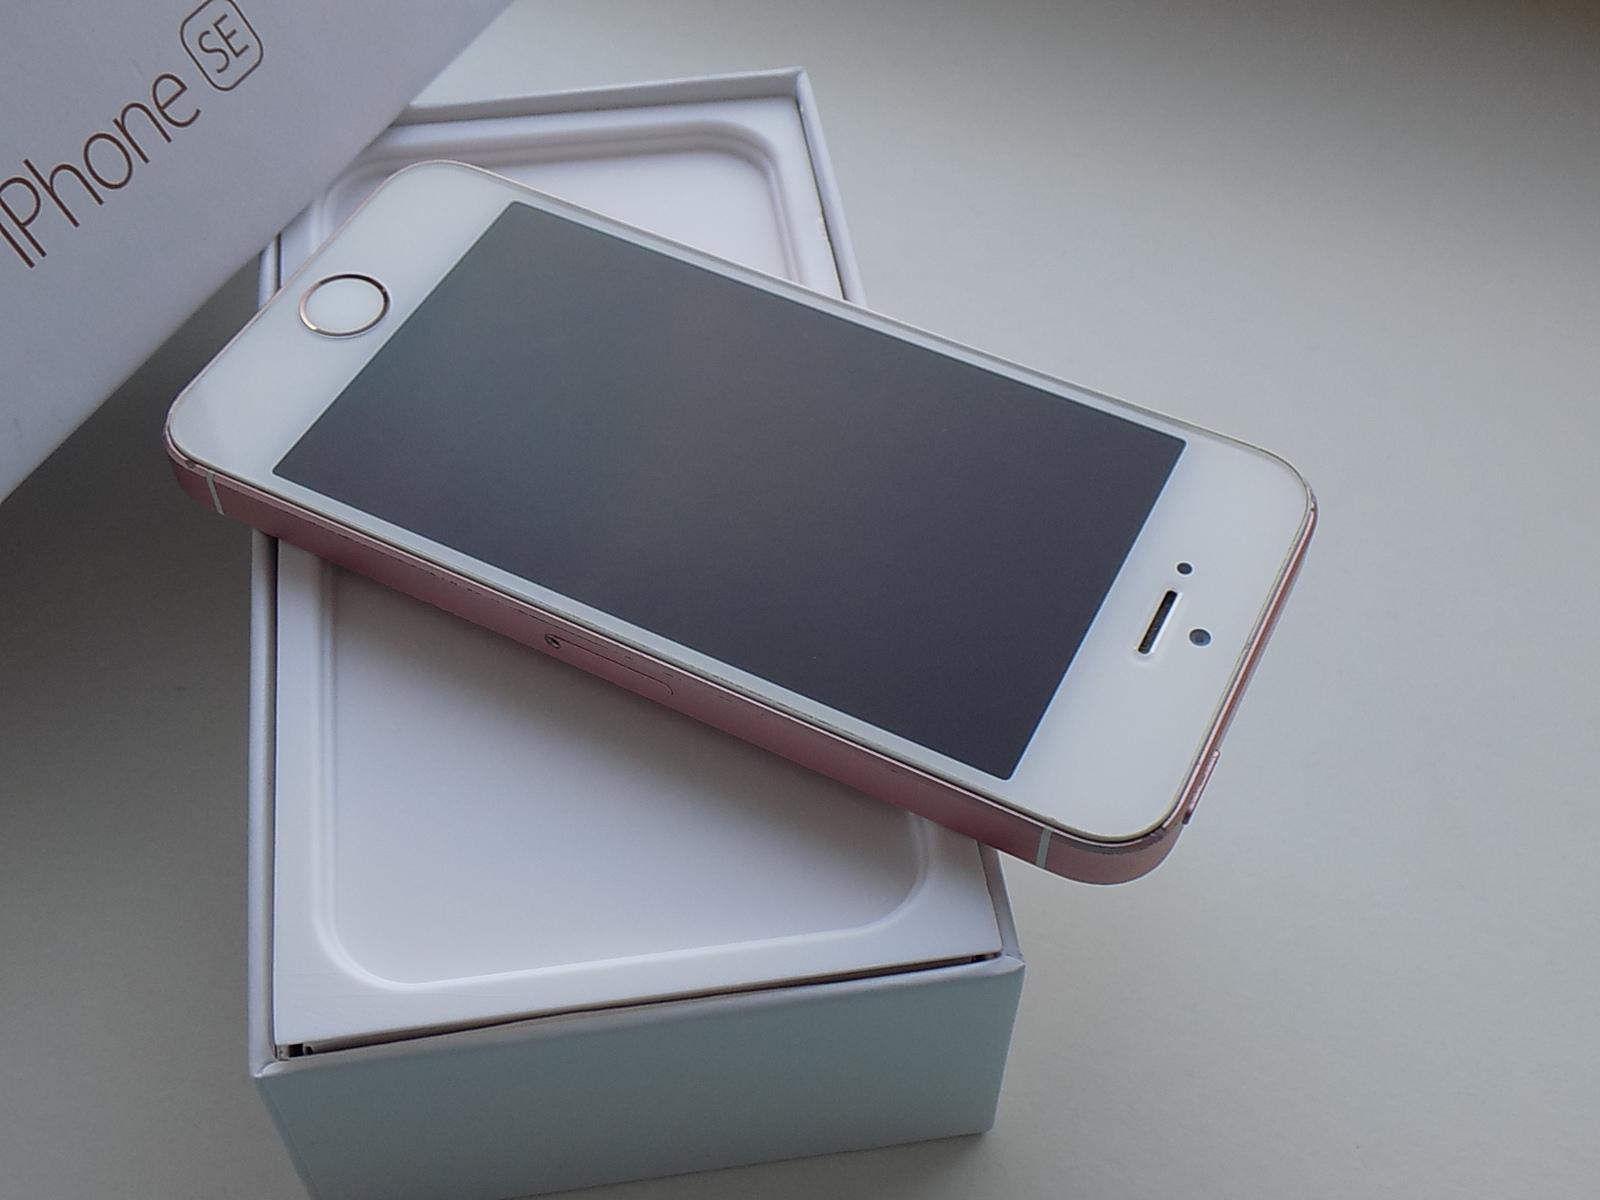 APPLE iPhone SE 32GB Rose Gold - KOMPLETNÍ BALENÍ - Mobily a chytrá elektronika